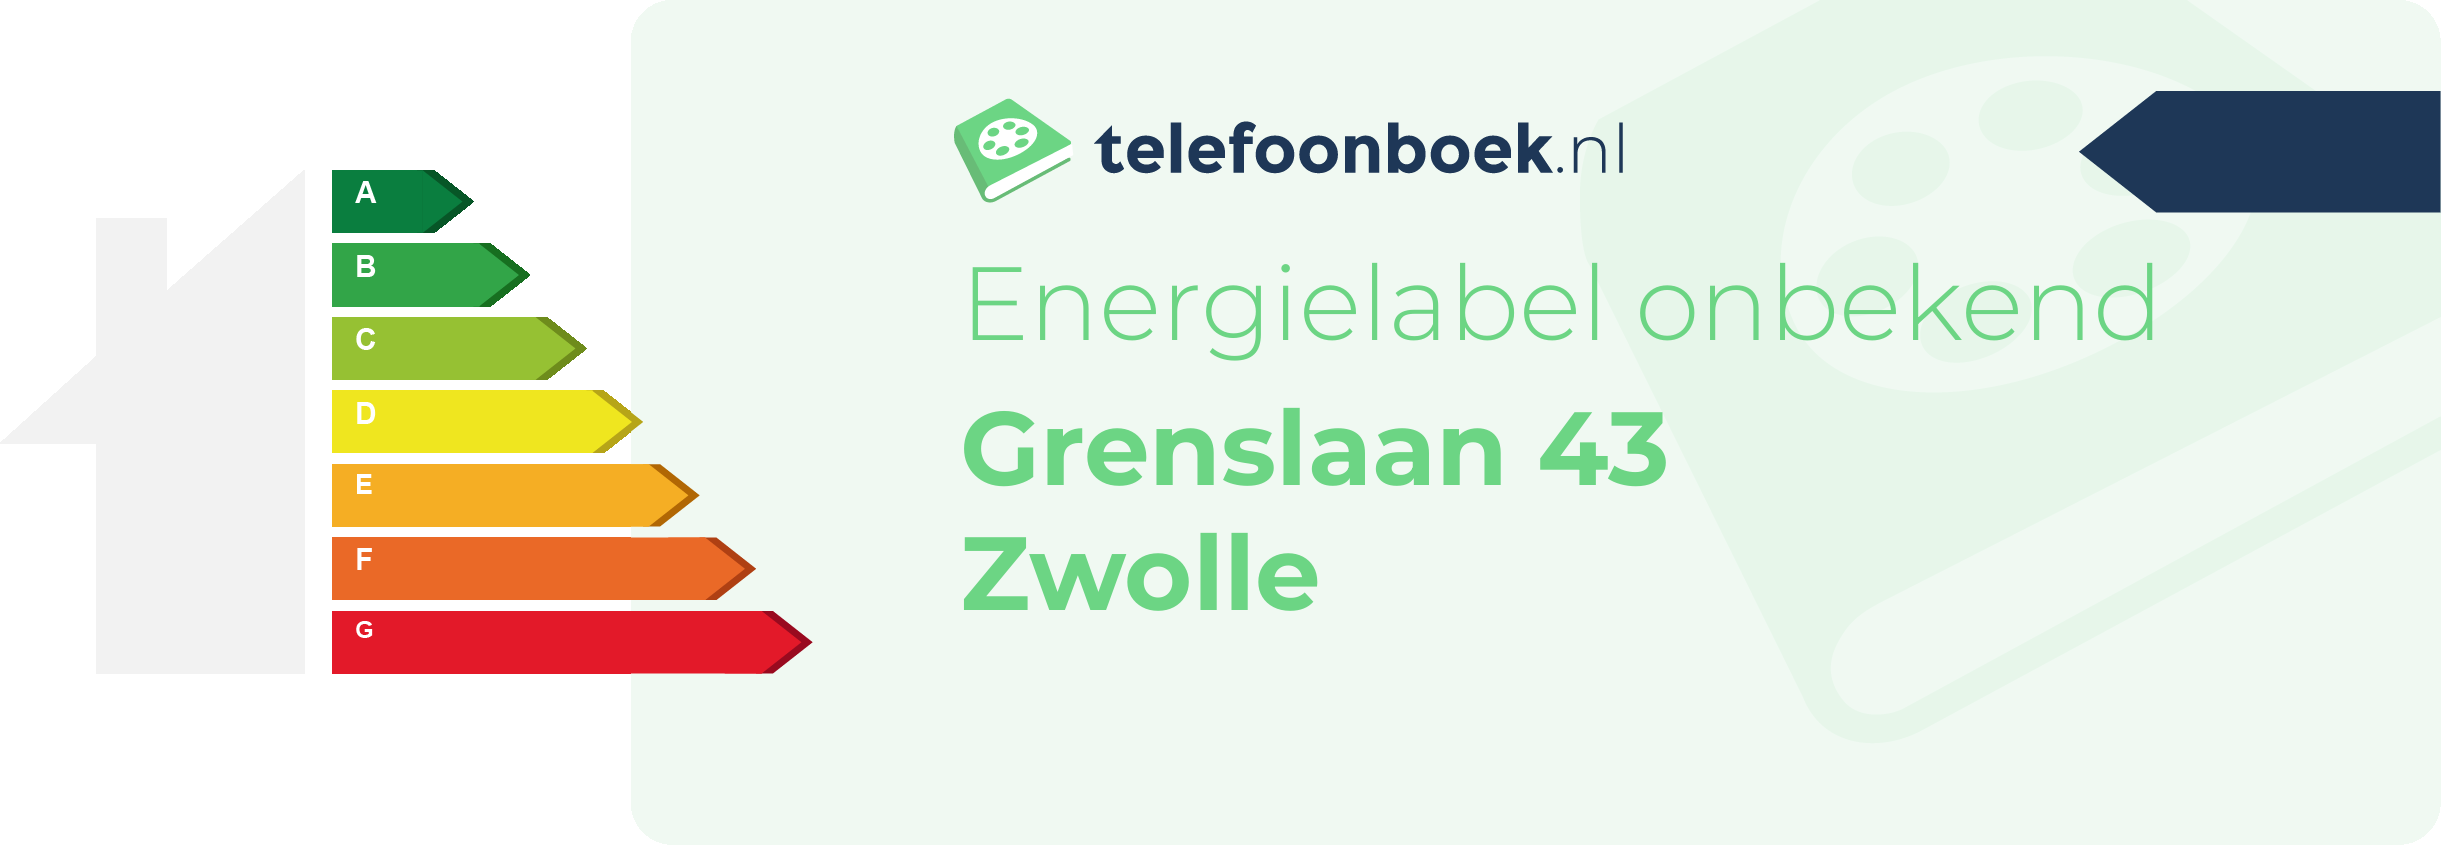 Energielabel Grenslaan 43 Zwolle